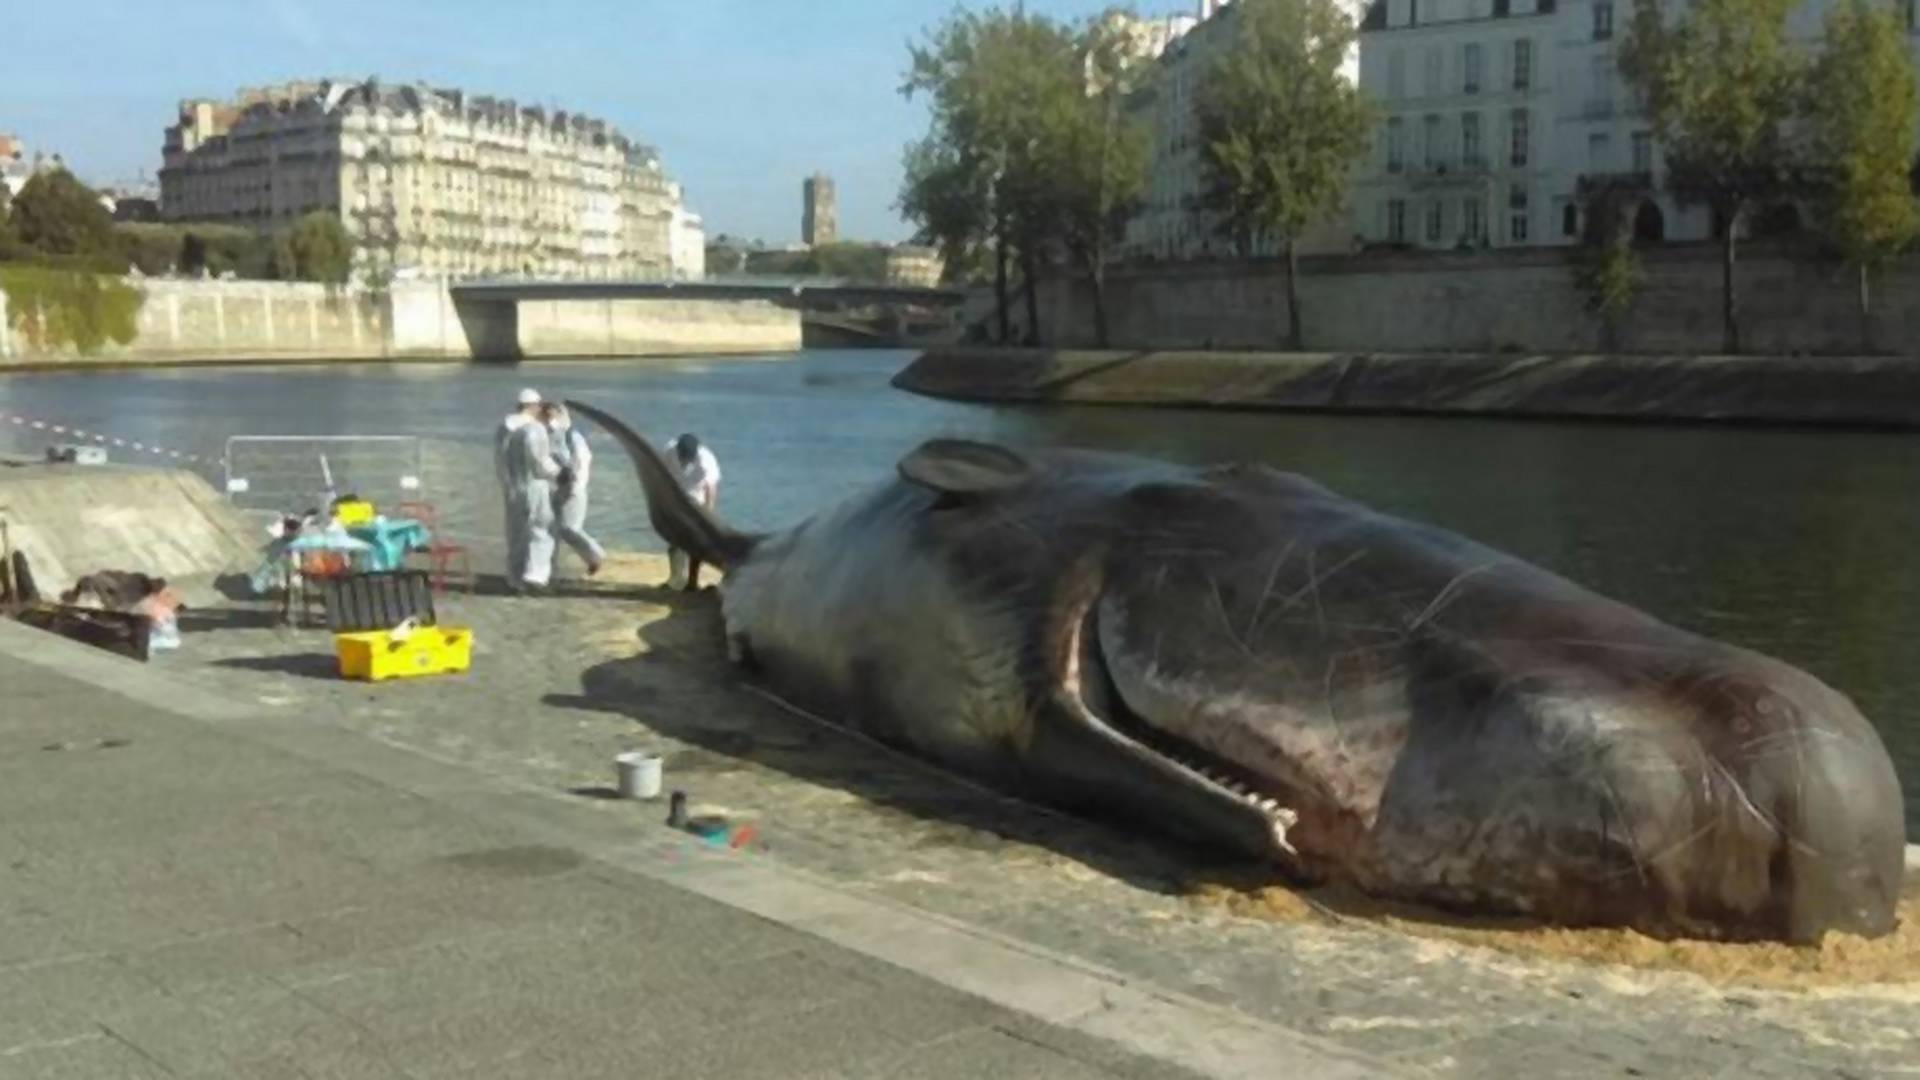 Ogromne ciało wieloryba na brzegu Sekwany w Paryżu. Skąd się tam wzięło?